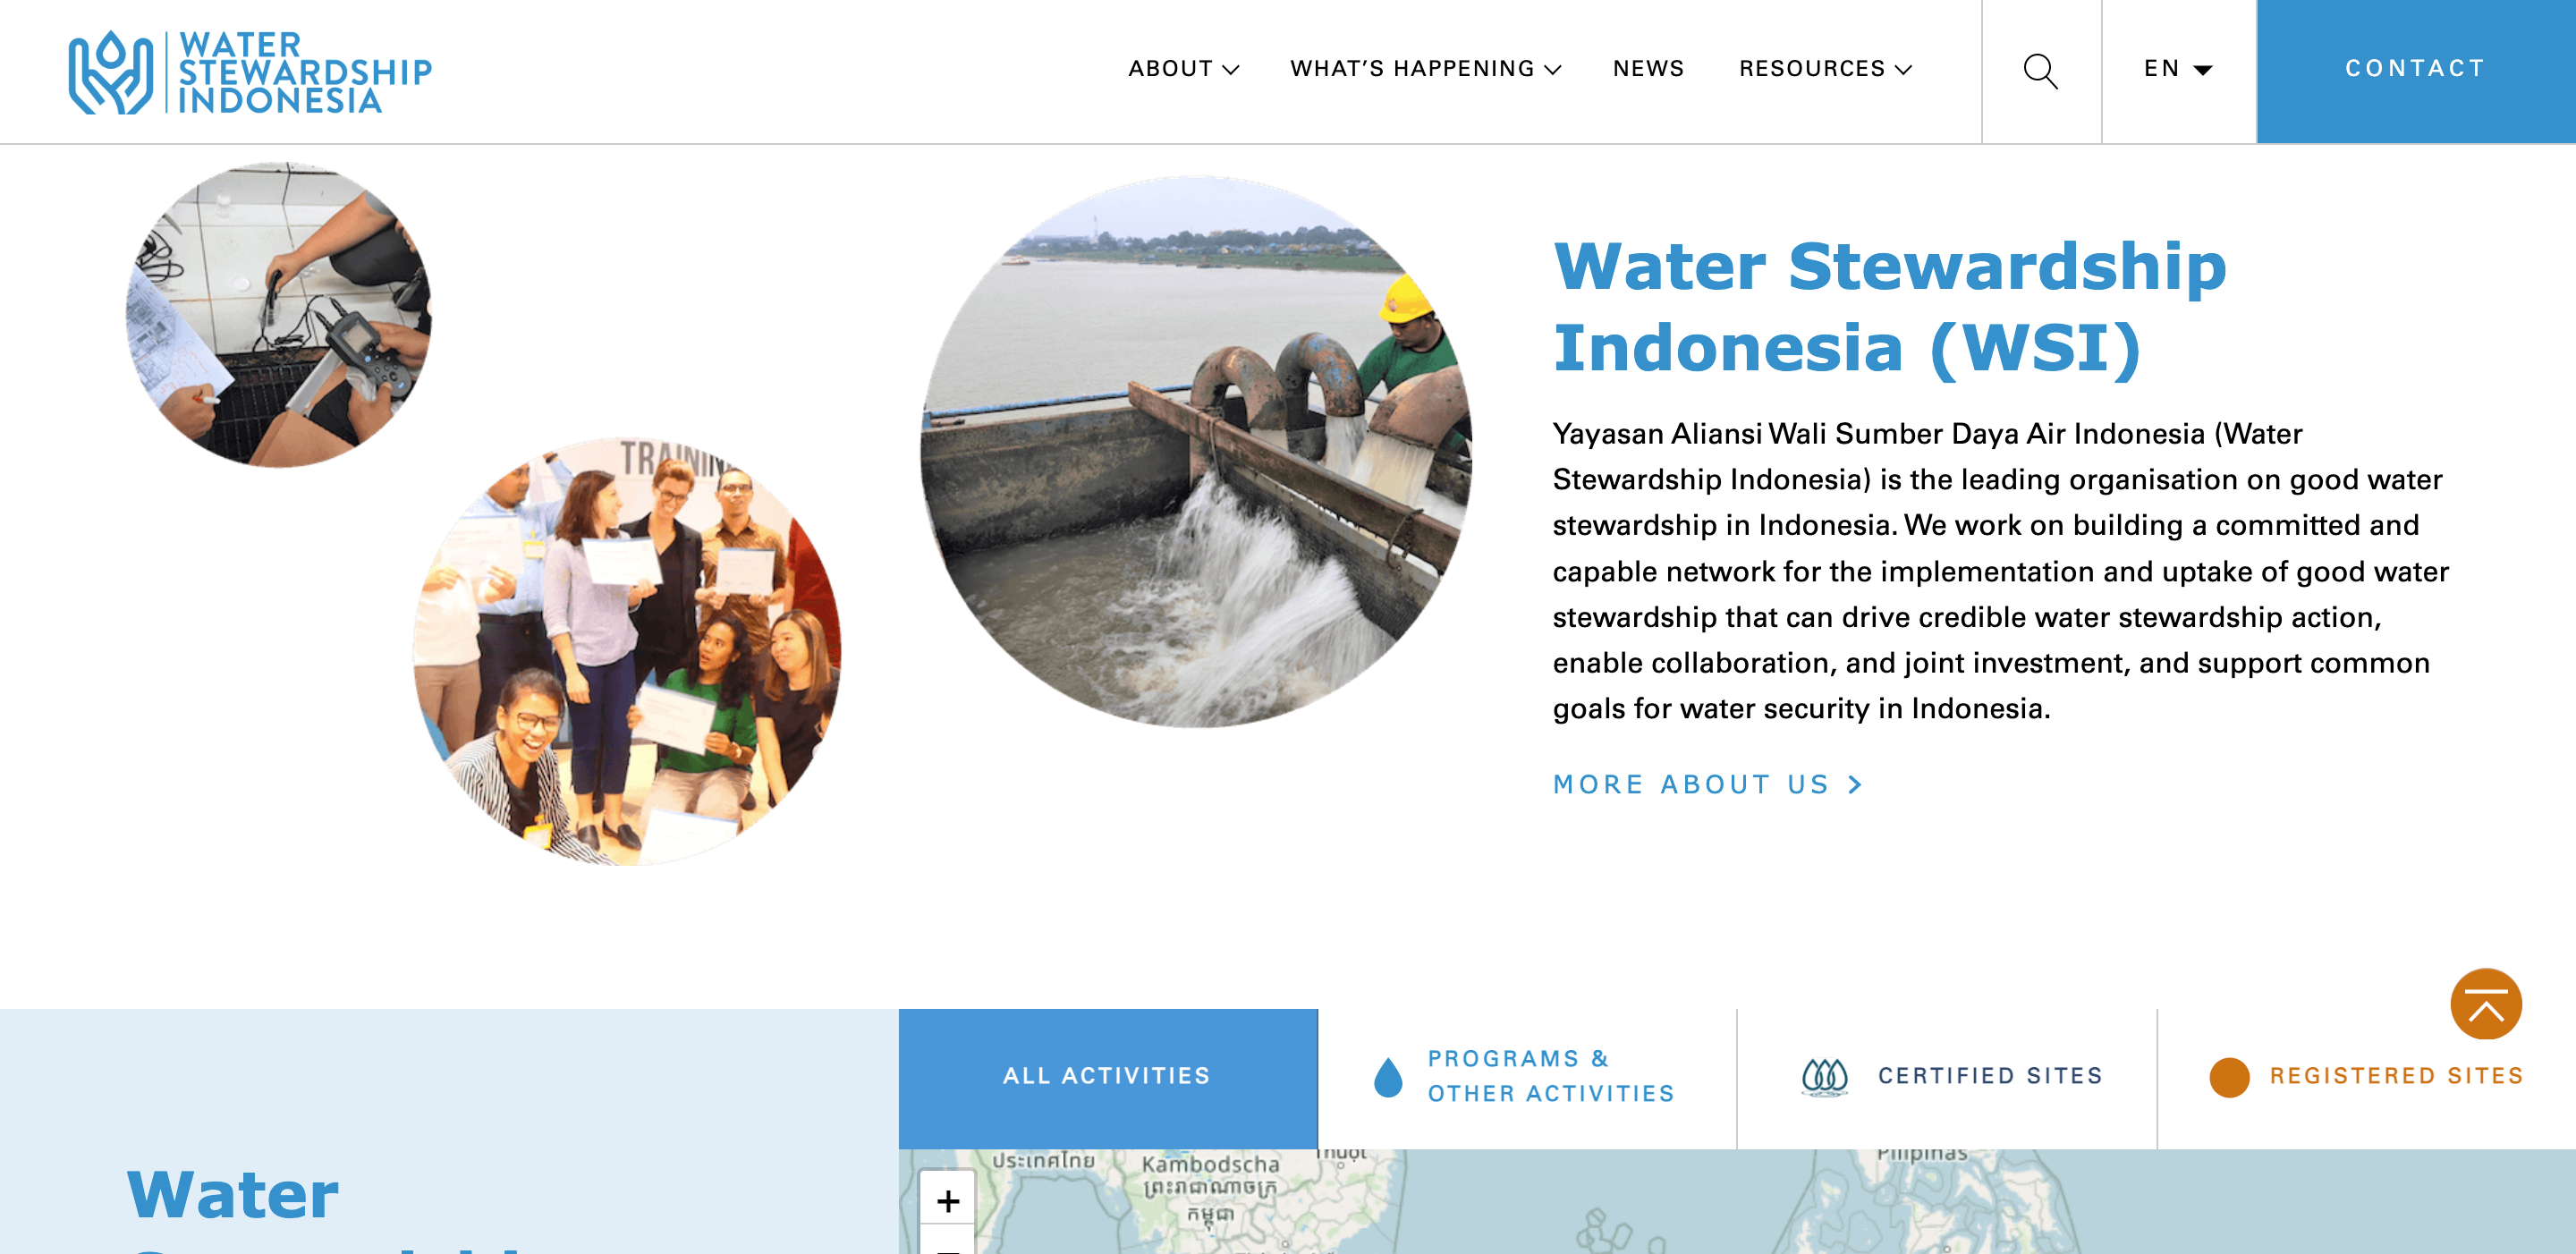 Yayasan Aliansi Wali Sumber Daya Air Indonesia